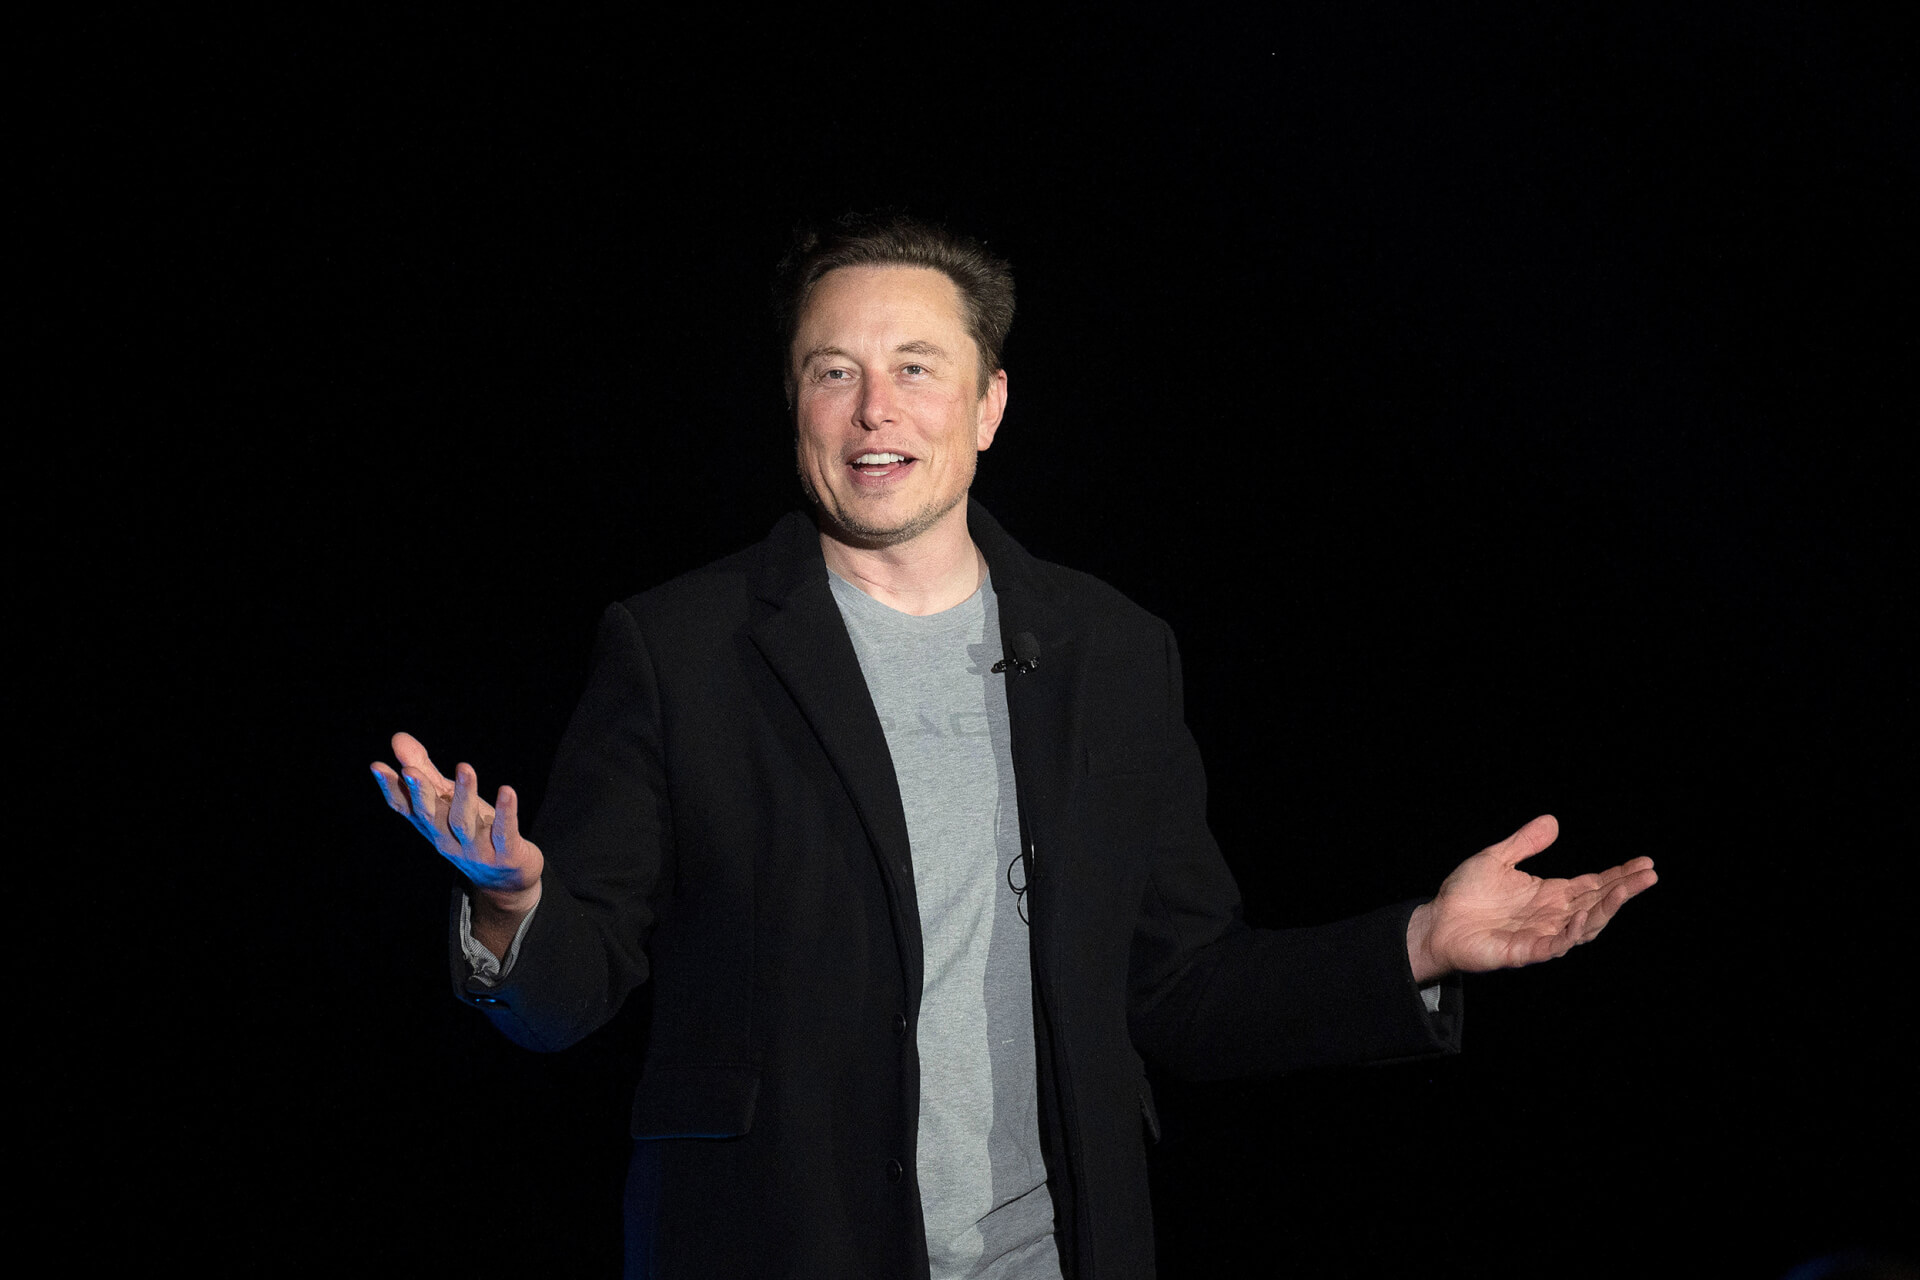 Tesla CEO Elon Musk’s $44bn Acquisition of Twitter Splits Opinion on Limits on Free Speech